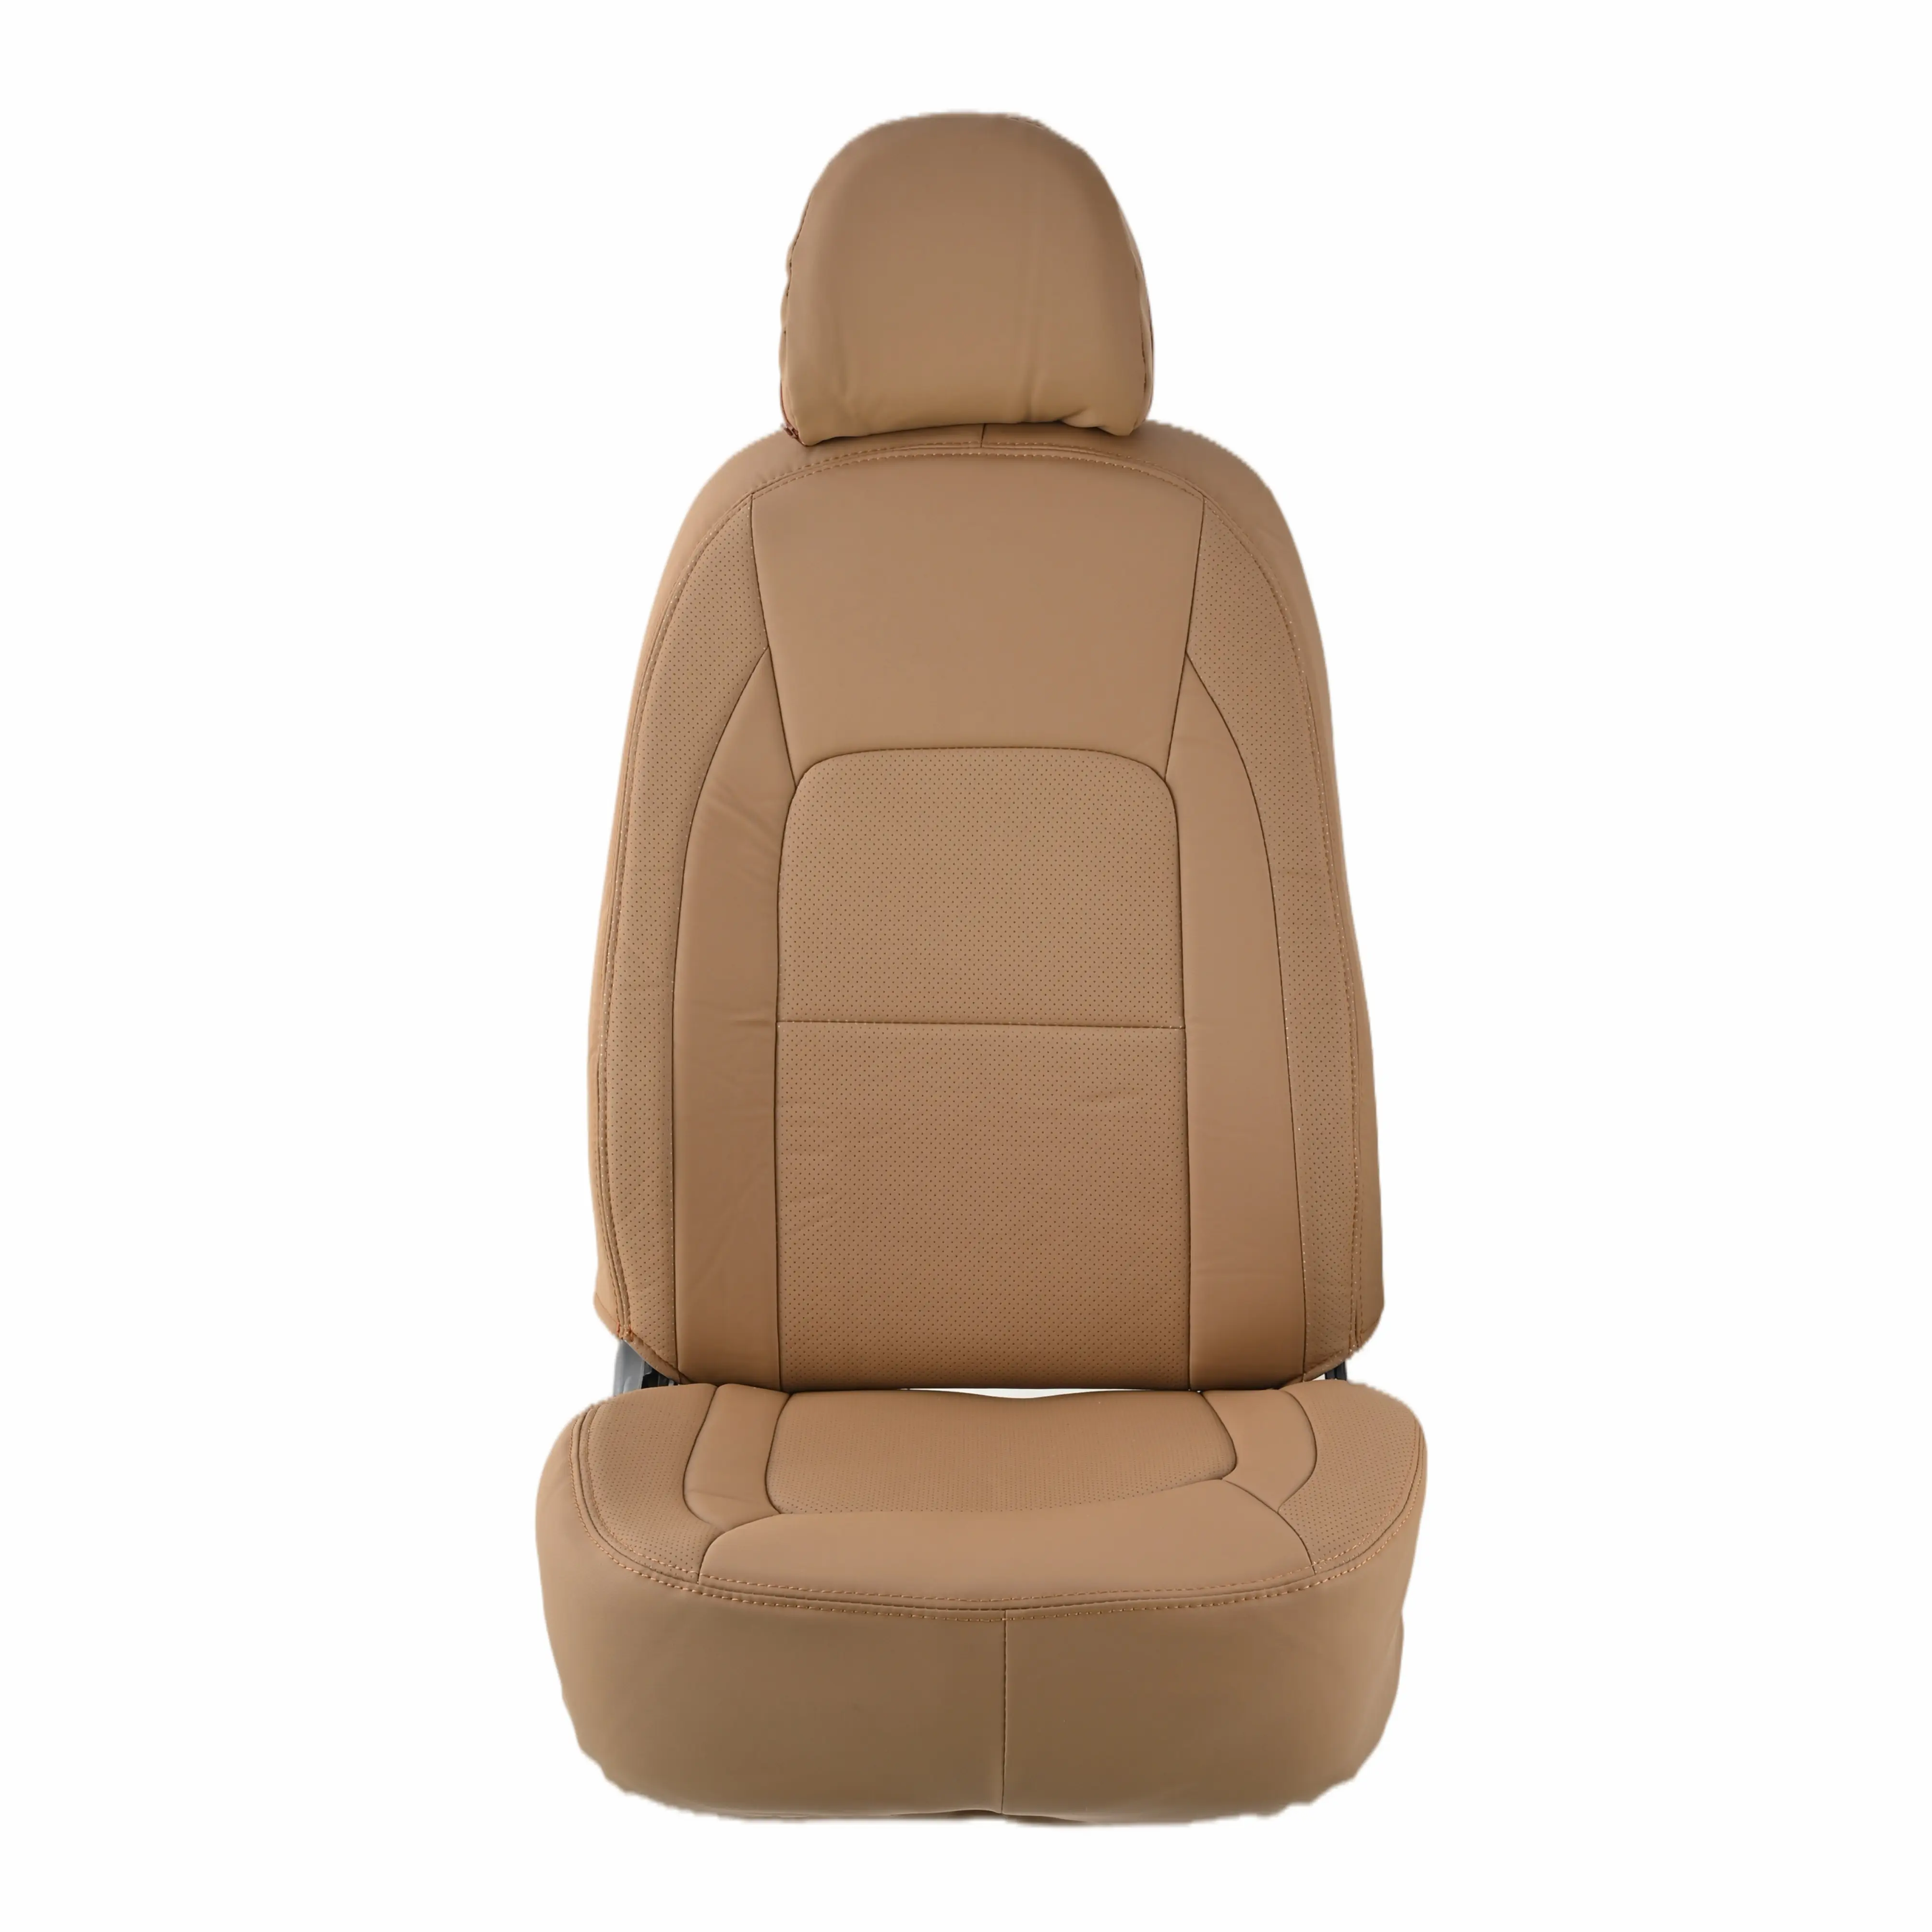 Housses de siège de voiture, couvre-siège pour véhicule, résistant à l'usure, anti-rayures